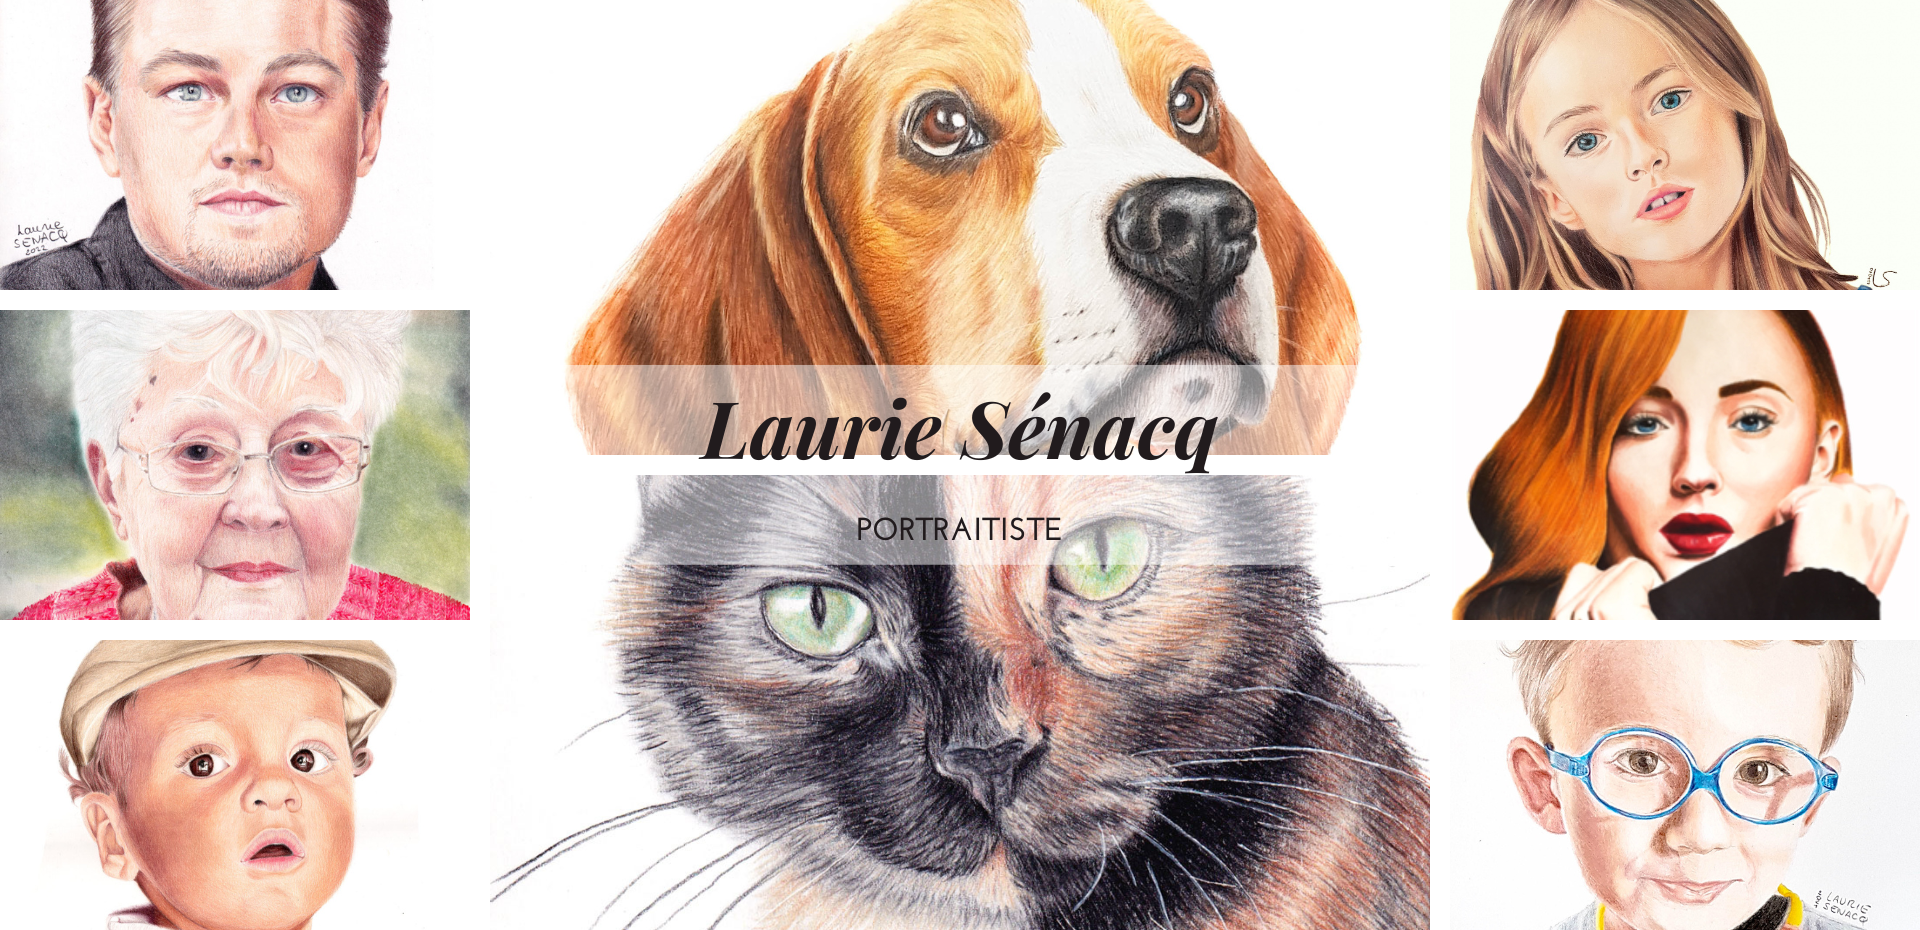 Image d'accueil du site lauriesenacq.com composée de plusieurs dessins réalisés par l'artiste Laurie Sénacq